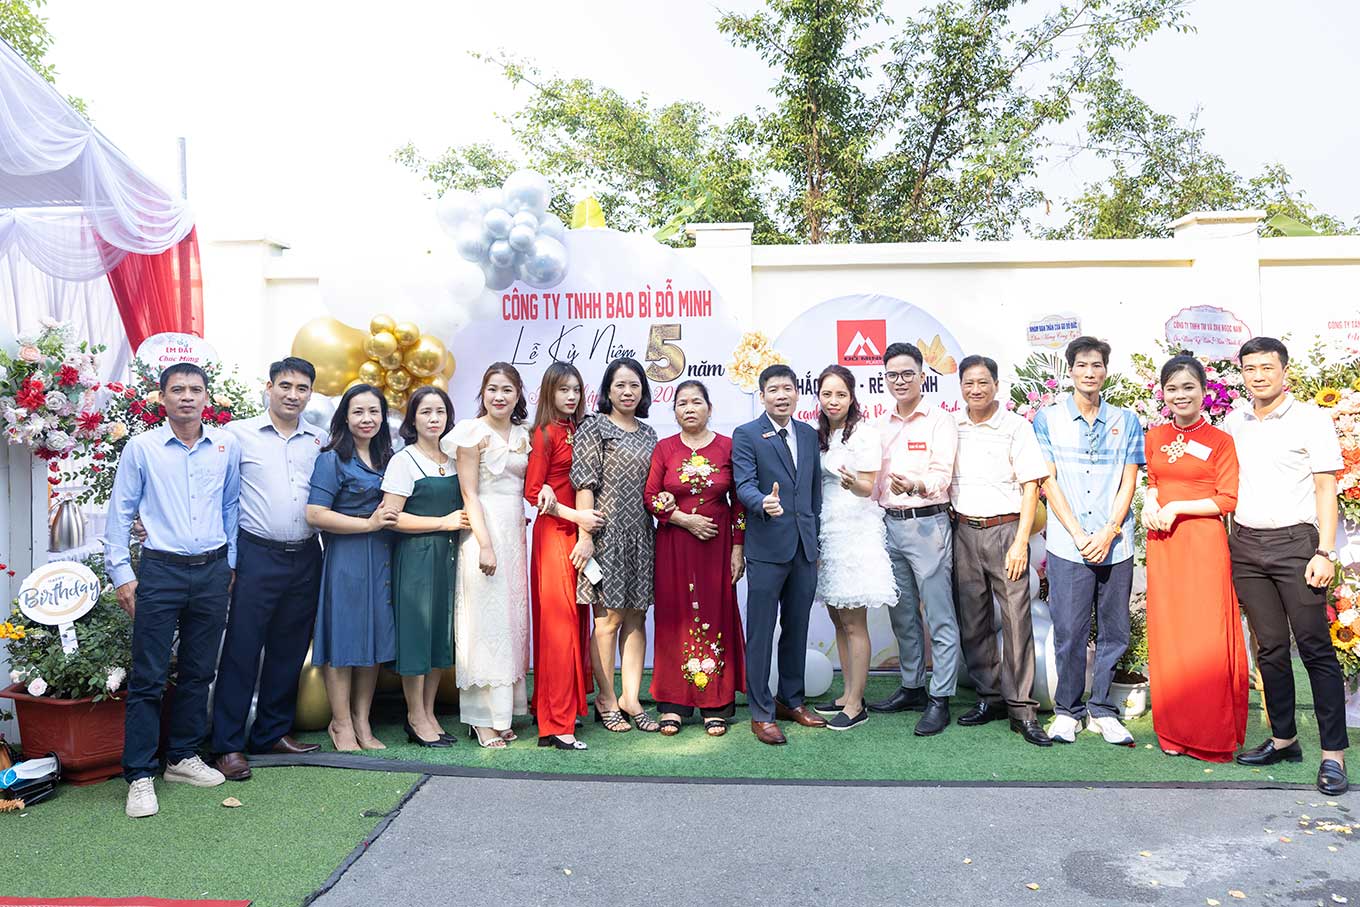 Lễ kỉ niệm 5 năm ngày thành lập Công ty TNHH Bao Bì Đỗ Minh